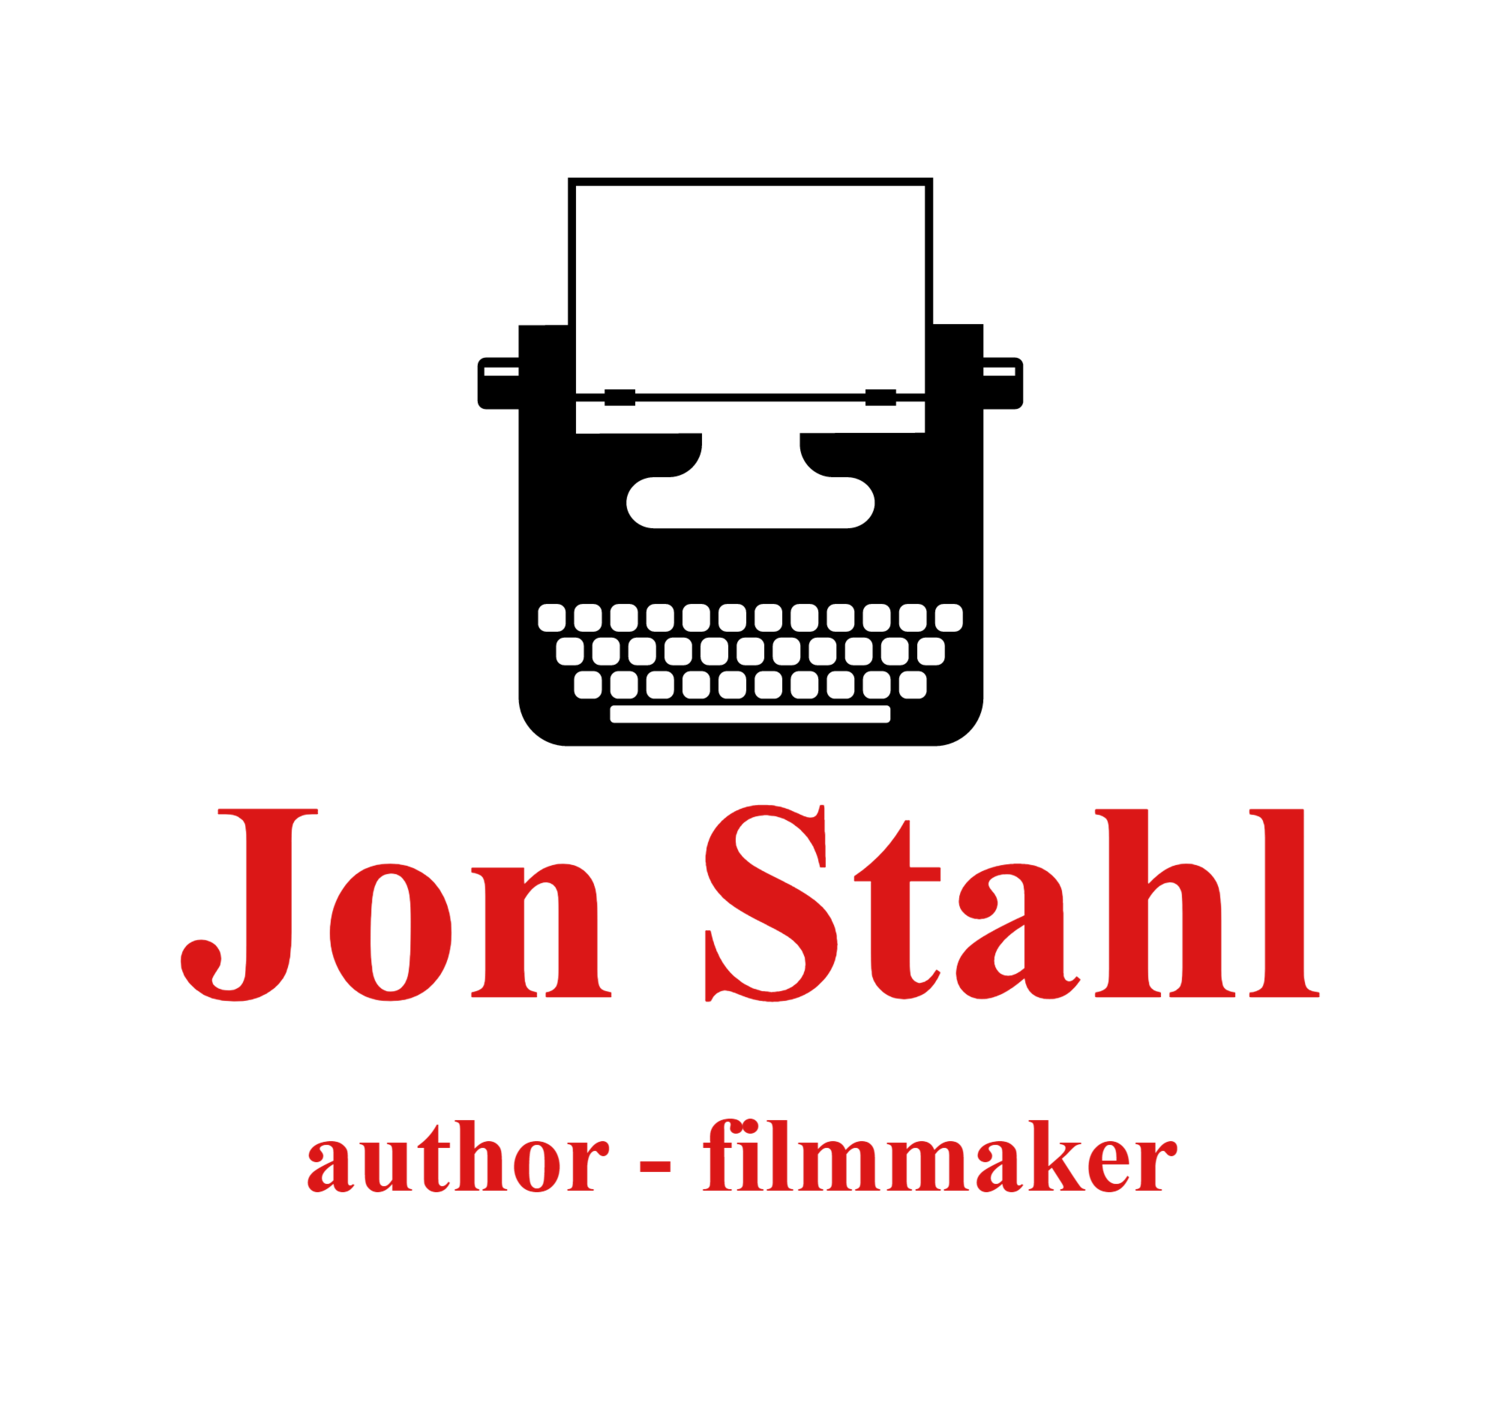 Jon Stahl